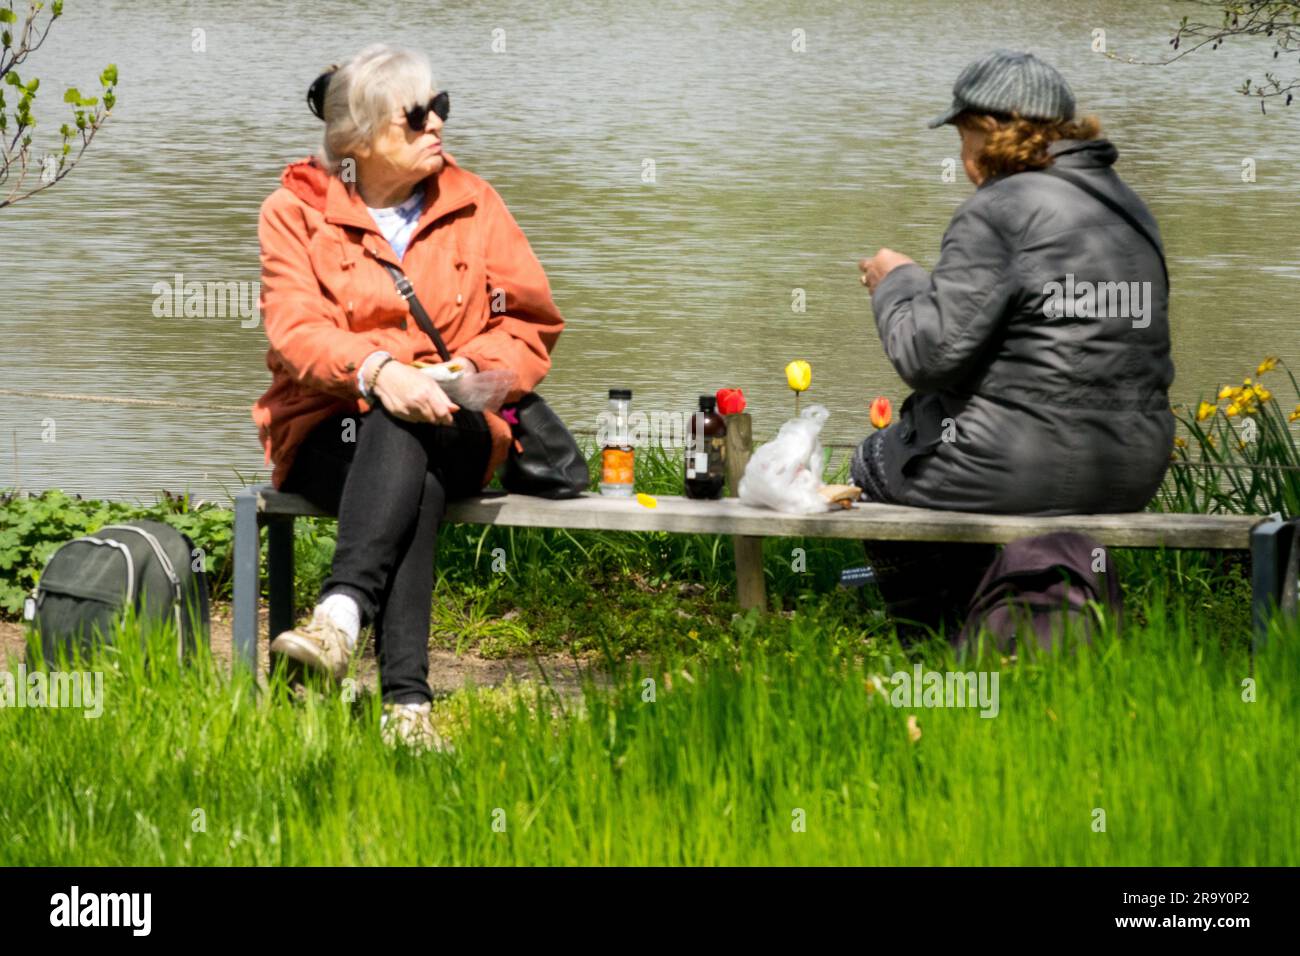 Femmes âgées, Banc, jardin femmes seniors République tchèque personnes des années 50 à 60 personnes âgées sur un banc dans un parc, personnes âgées vieillissant, population, vieillissement Banque D'Images